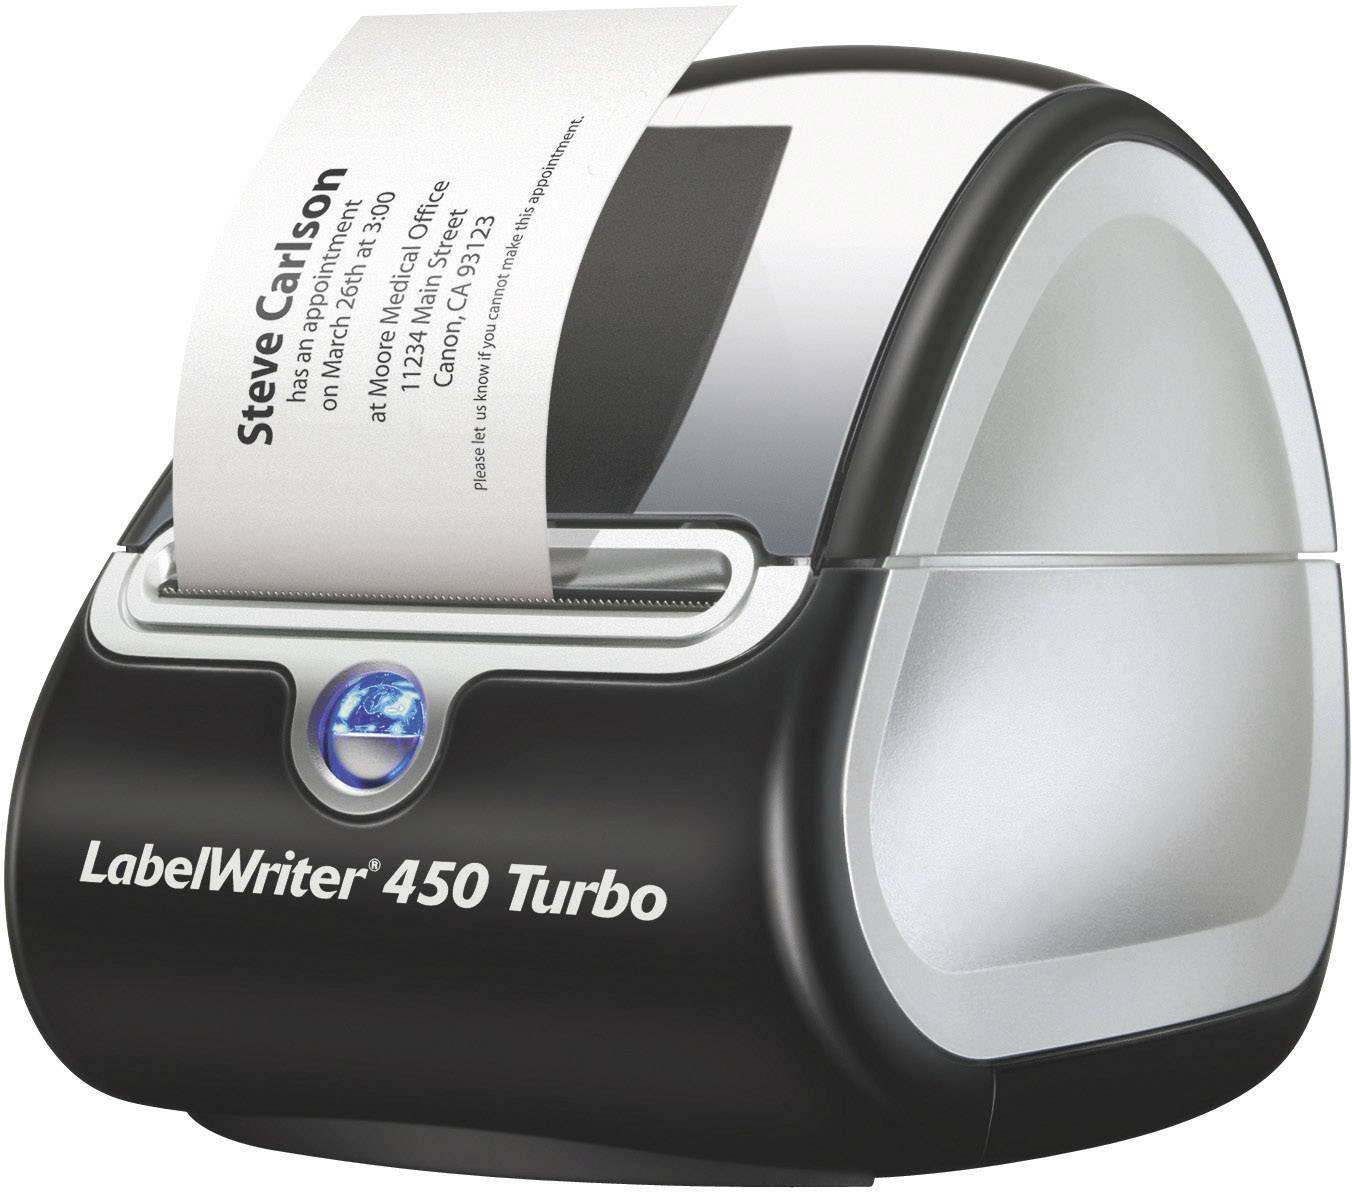 dymo labelwriter 450 turbo label printer